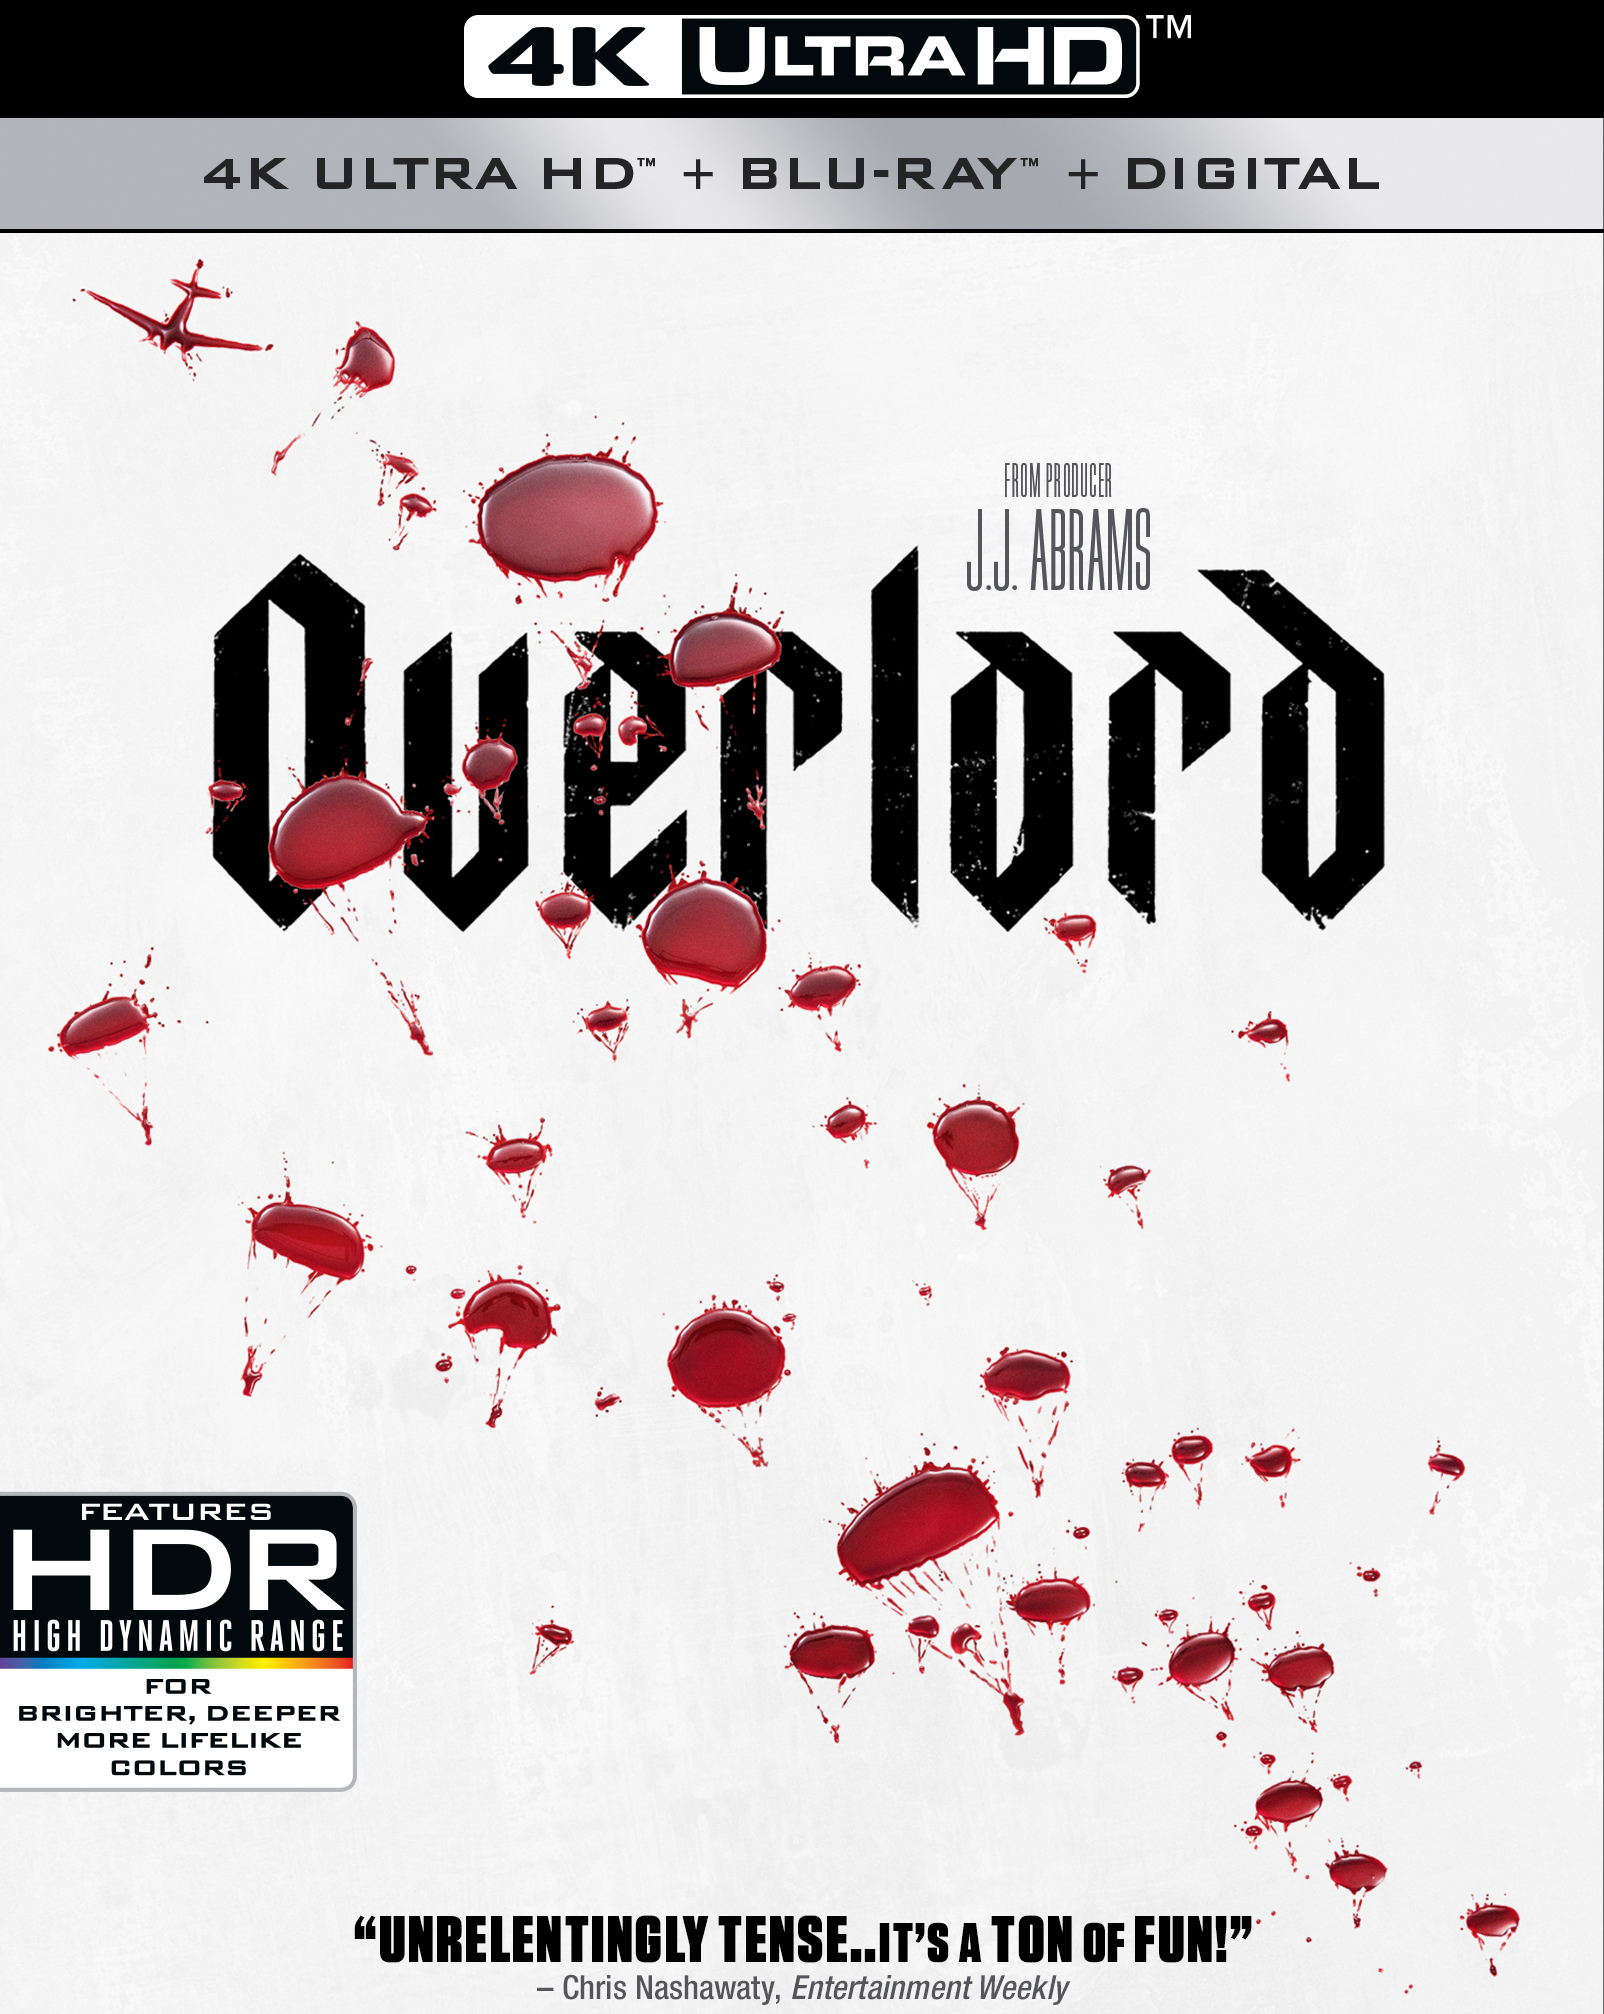 Overlord III: Season Three [Blu-ray] - Best Buy